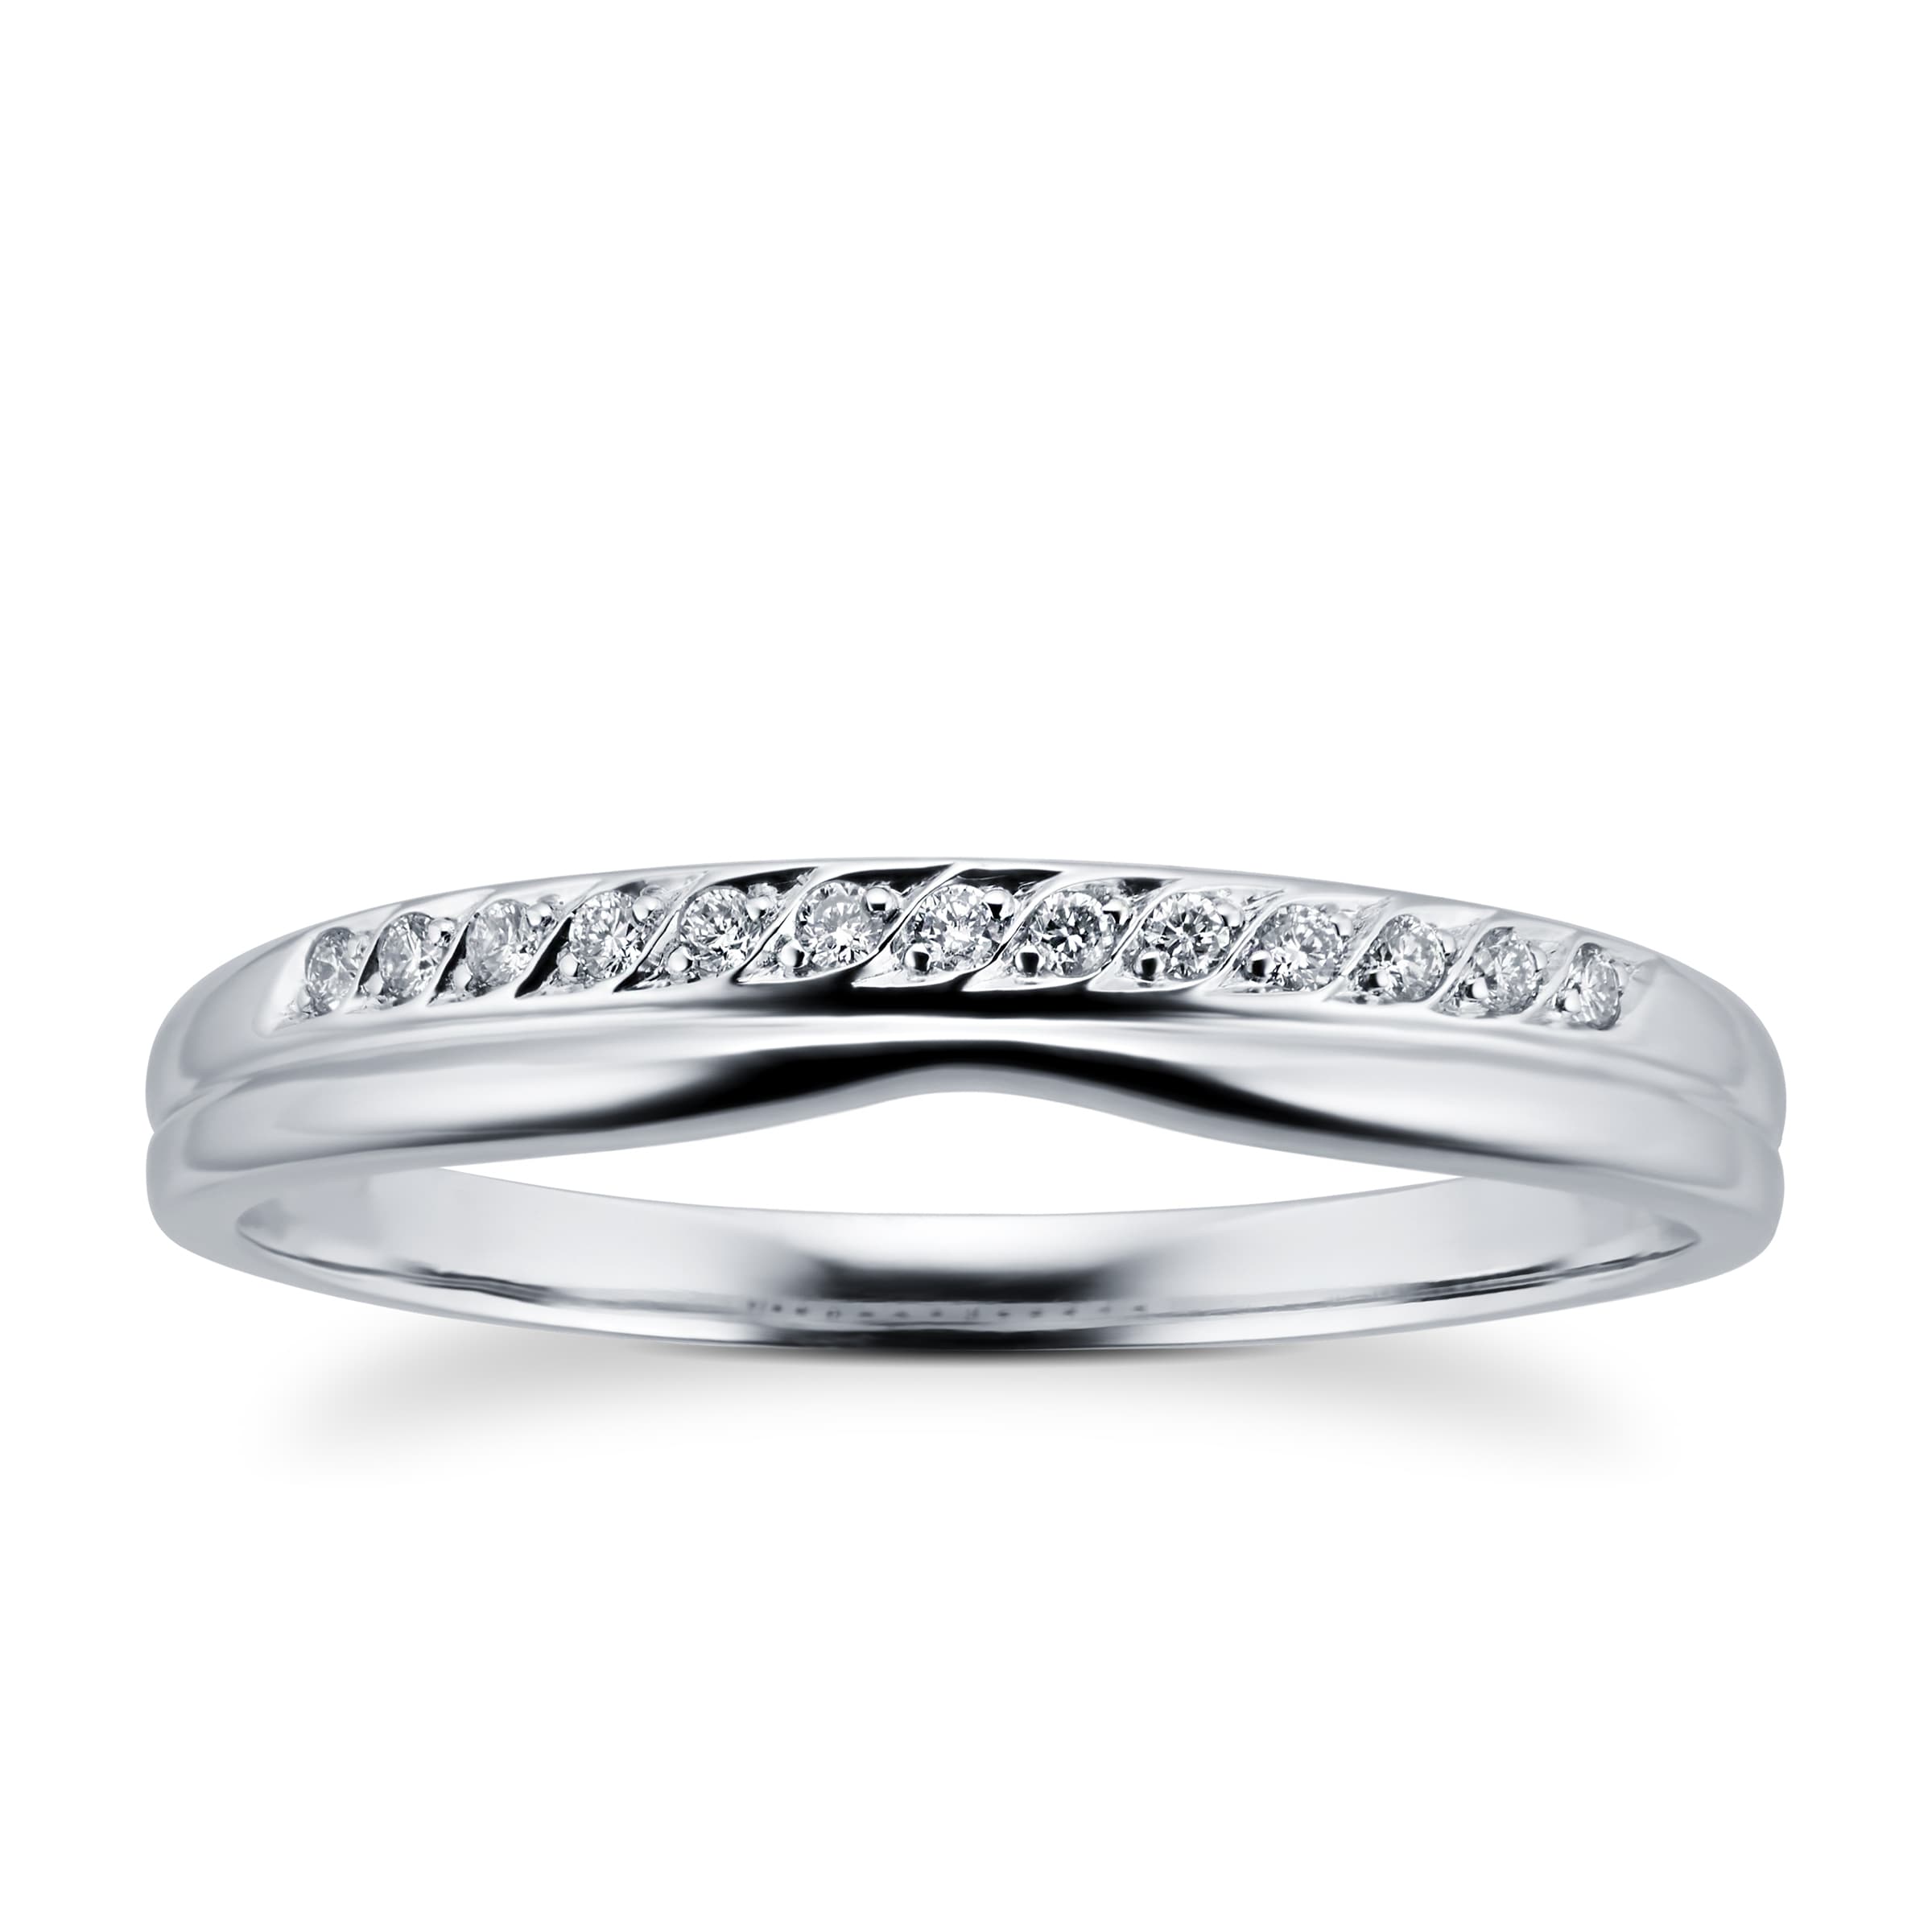 Ladies Diamond Set Shaped Wedding Ring In 18 Carat White Gold - Ring Size M